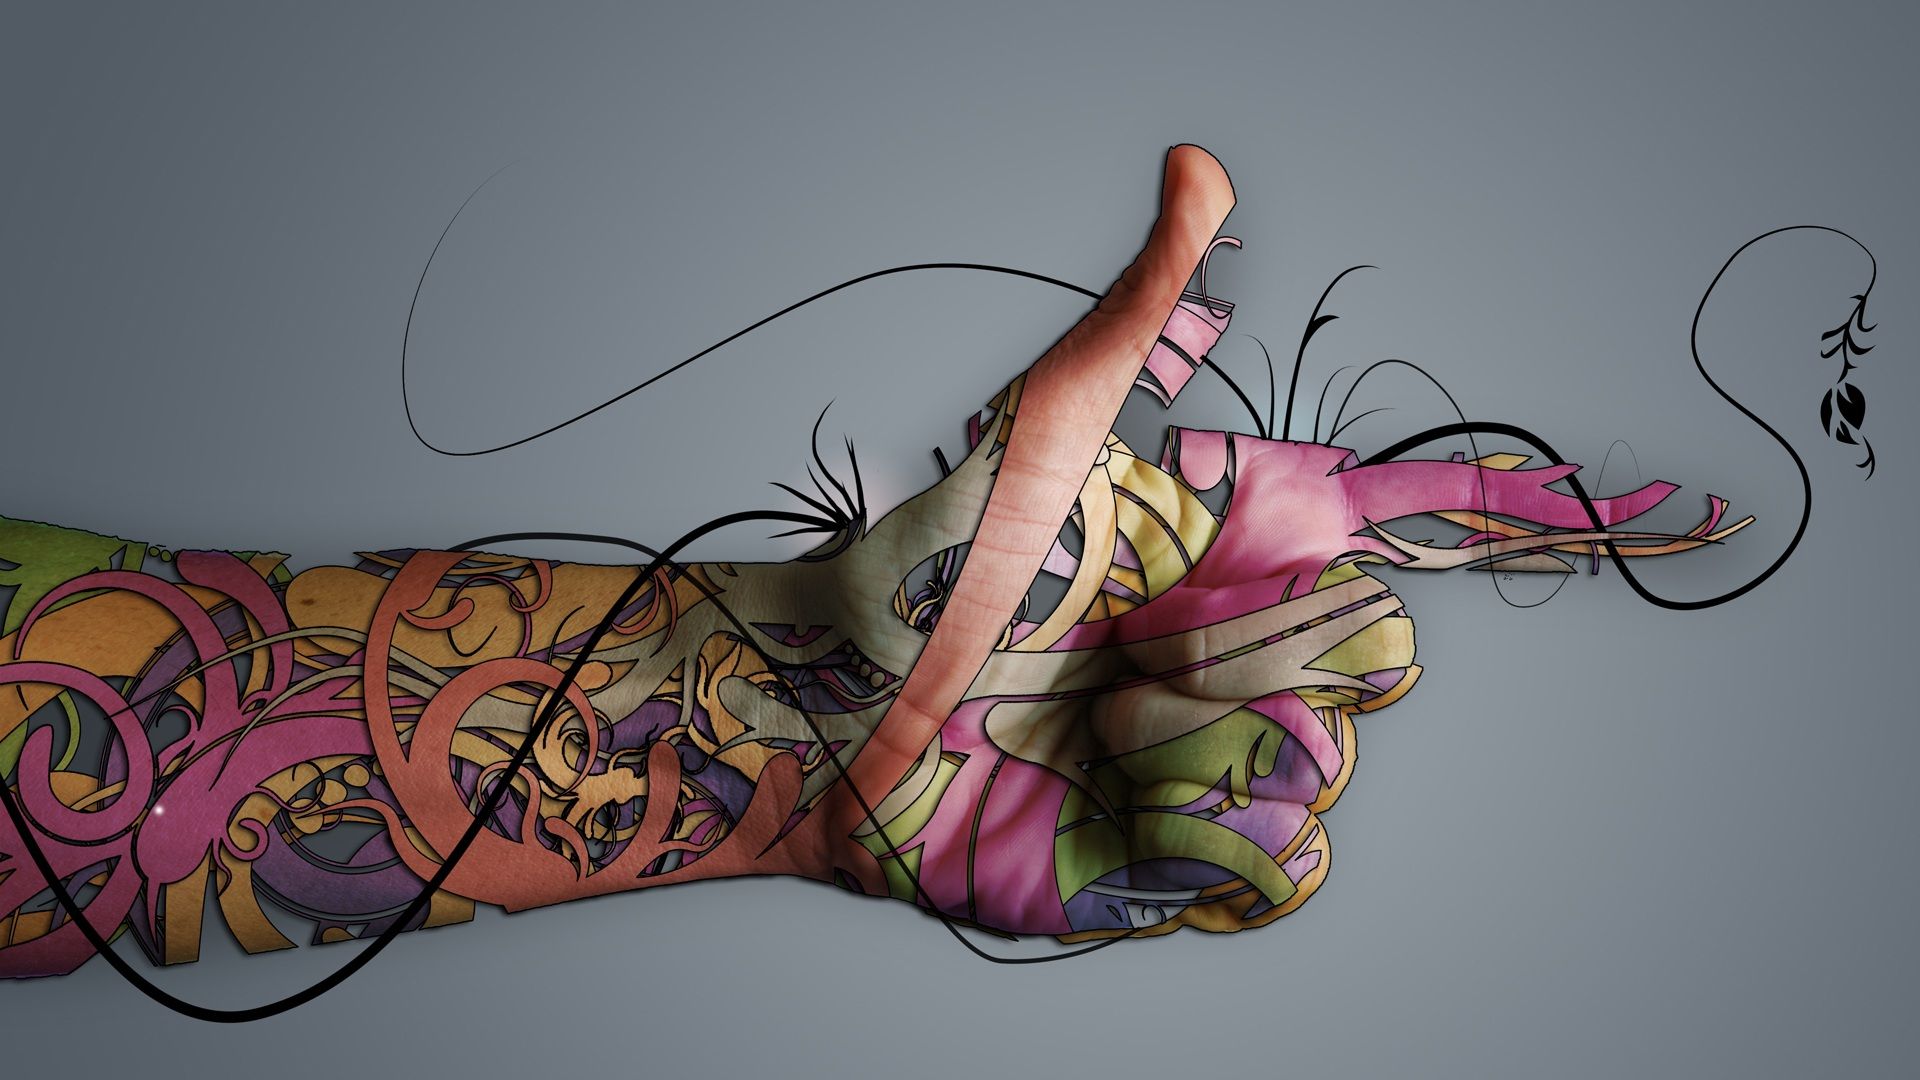 Art Abstract Hand Tattoo Wallpaper Pics Wallpaper High resolution